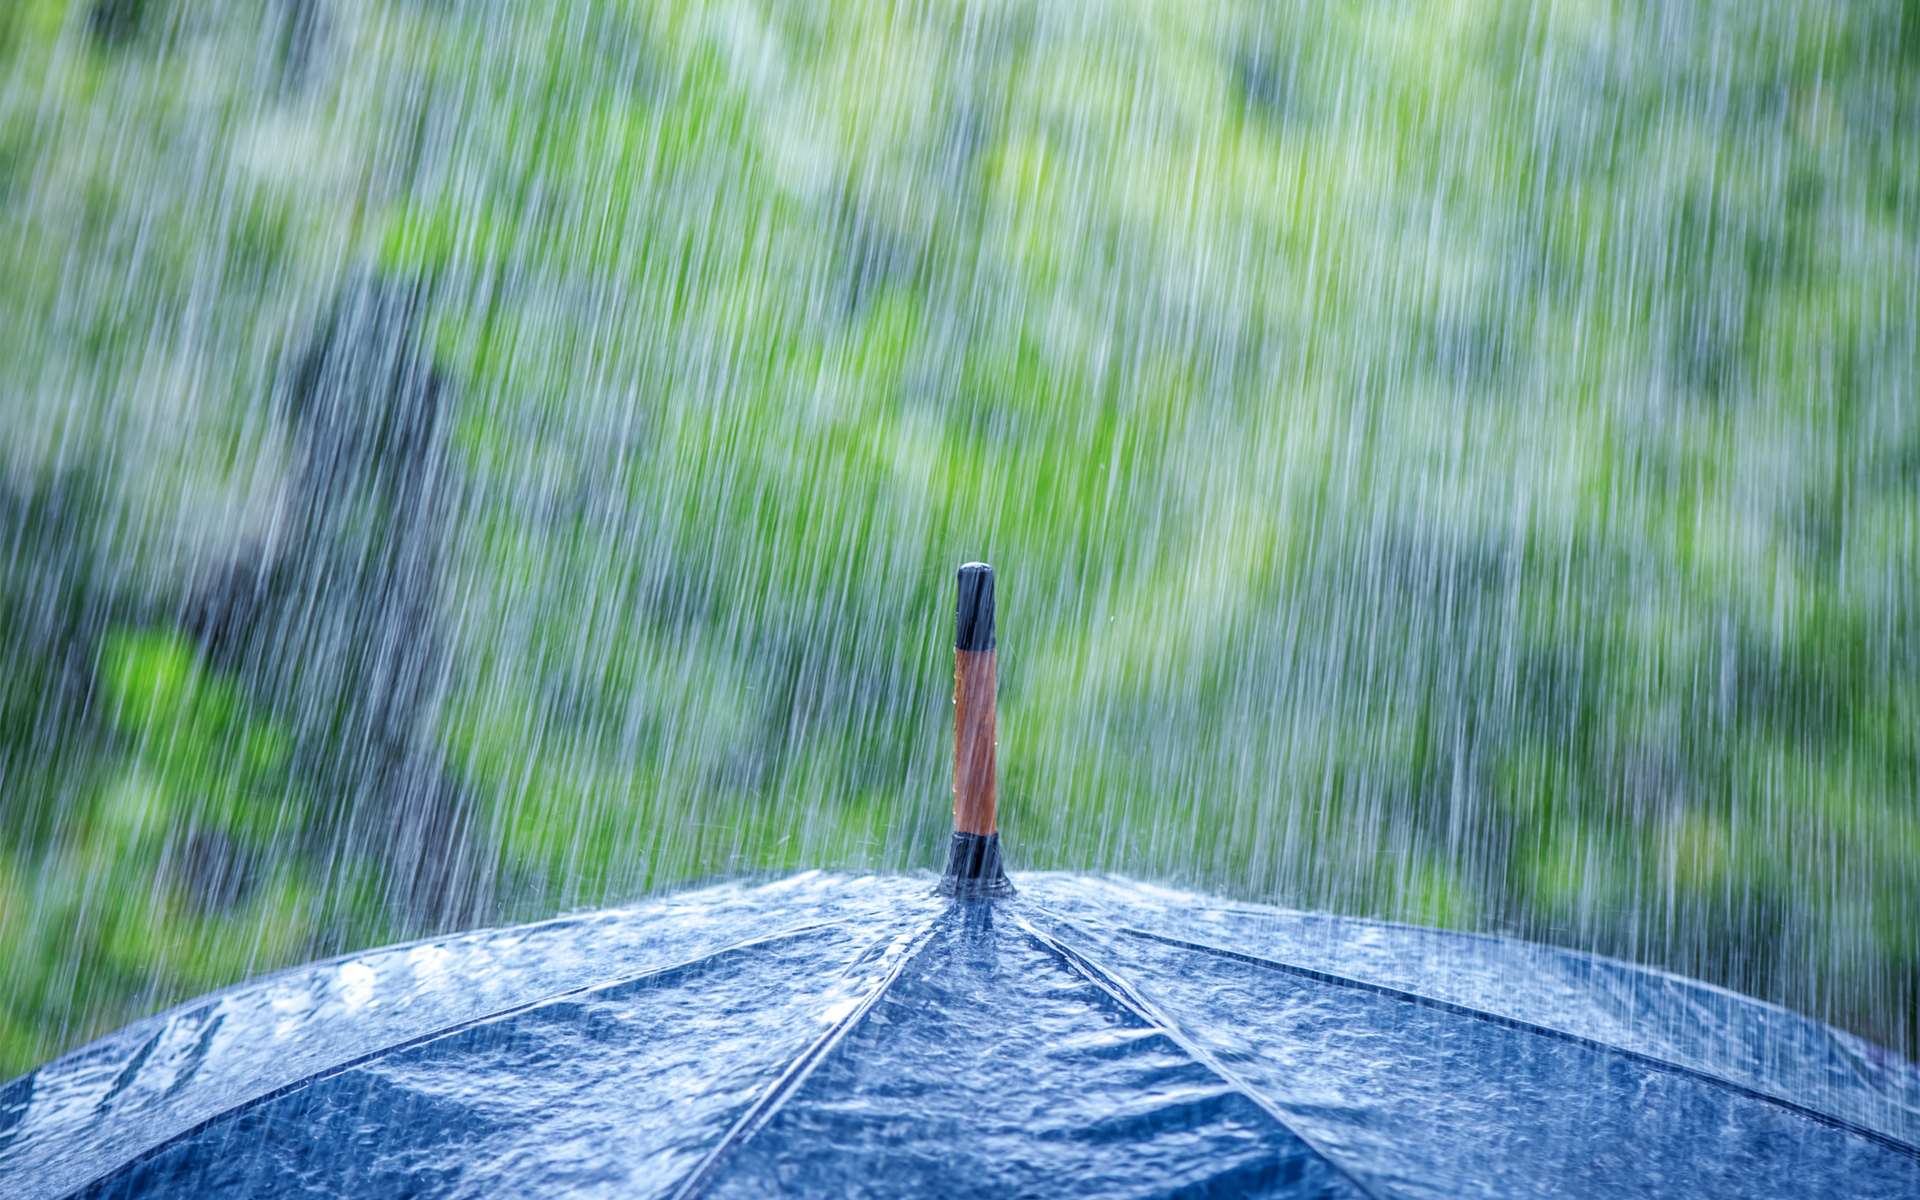 Les épisodes de précipitations intenses sont finalement toujours corrélés à des extrêmes, chauds ou froids. © ivan kmit, Adobe Stock